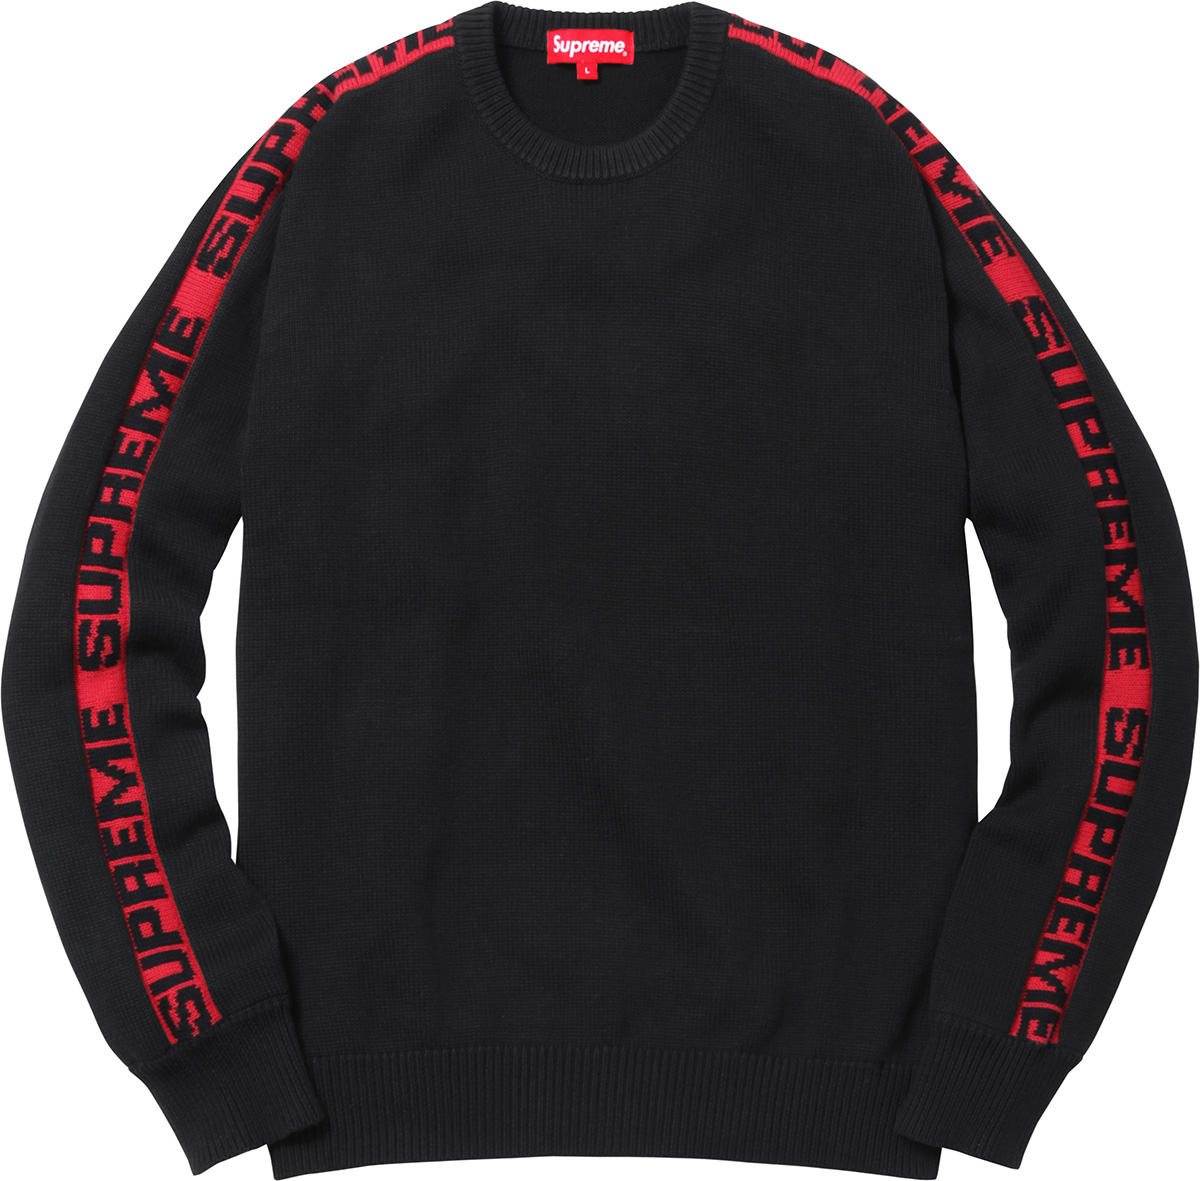 [해외] 슈프림 슬리브 스트라이프 스웨터 Supreme Sleeve Stripe Sweater 17SS